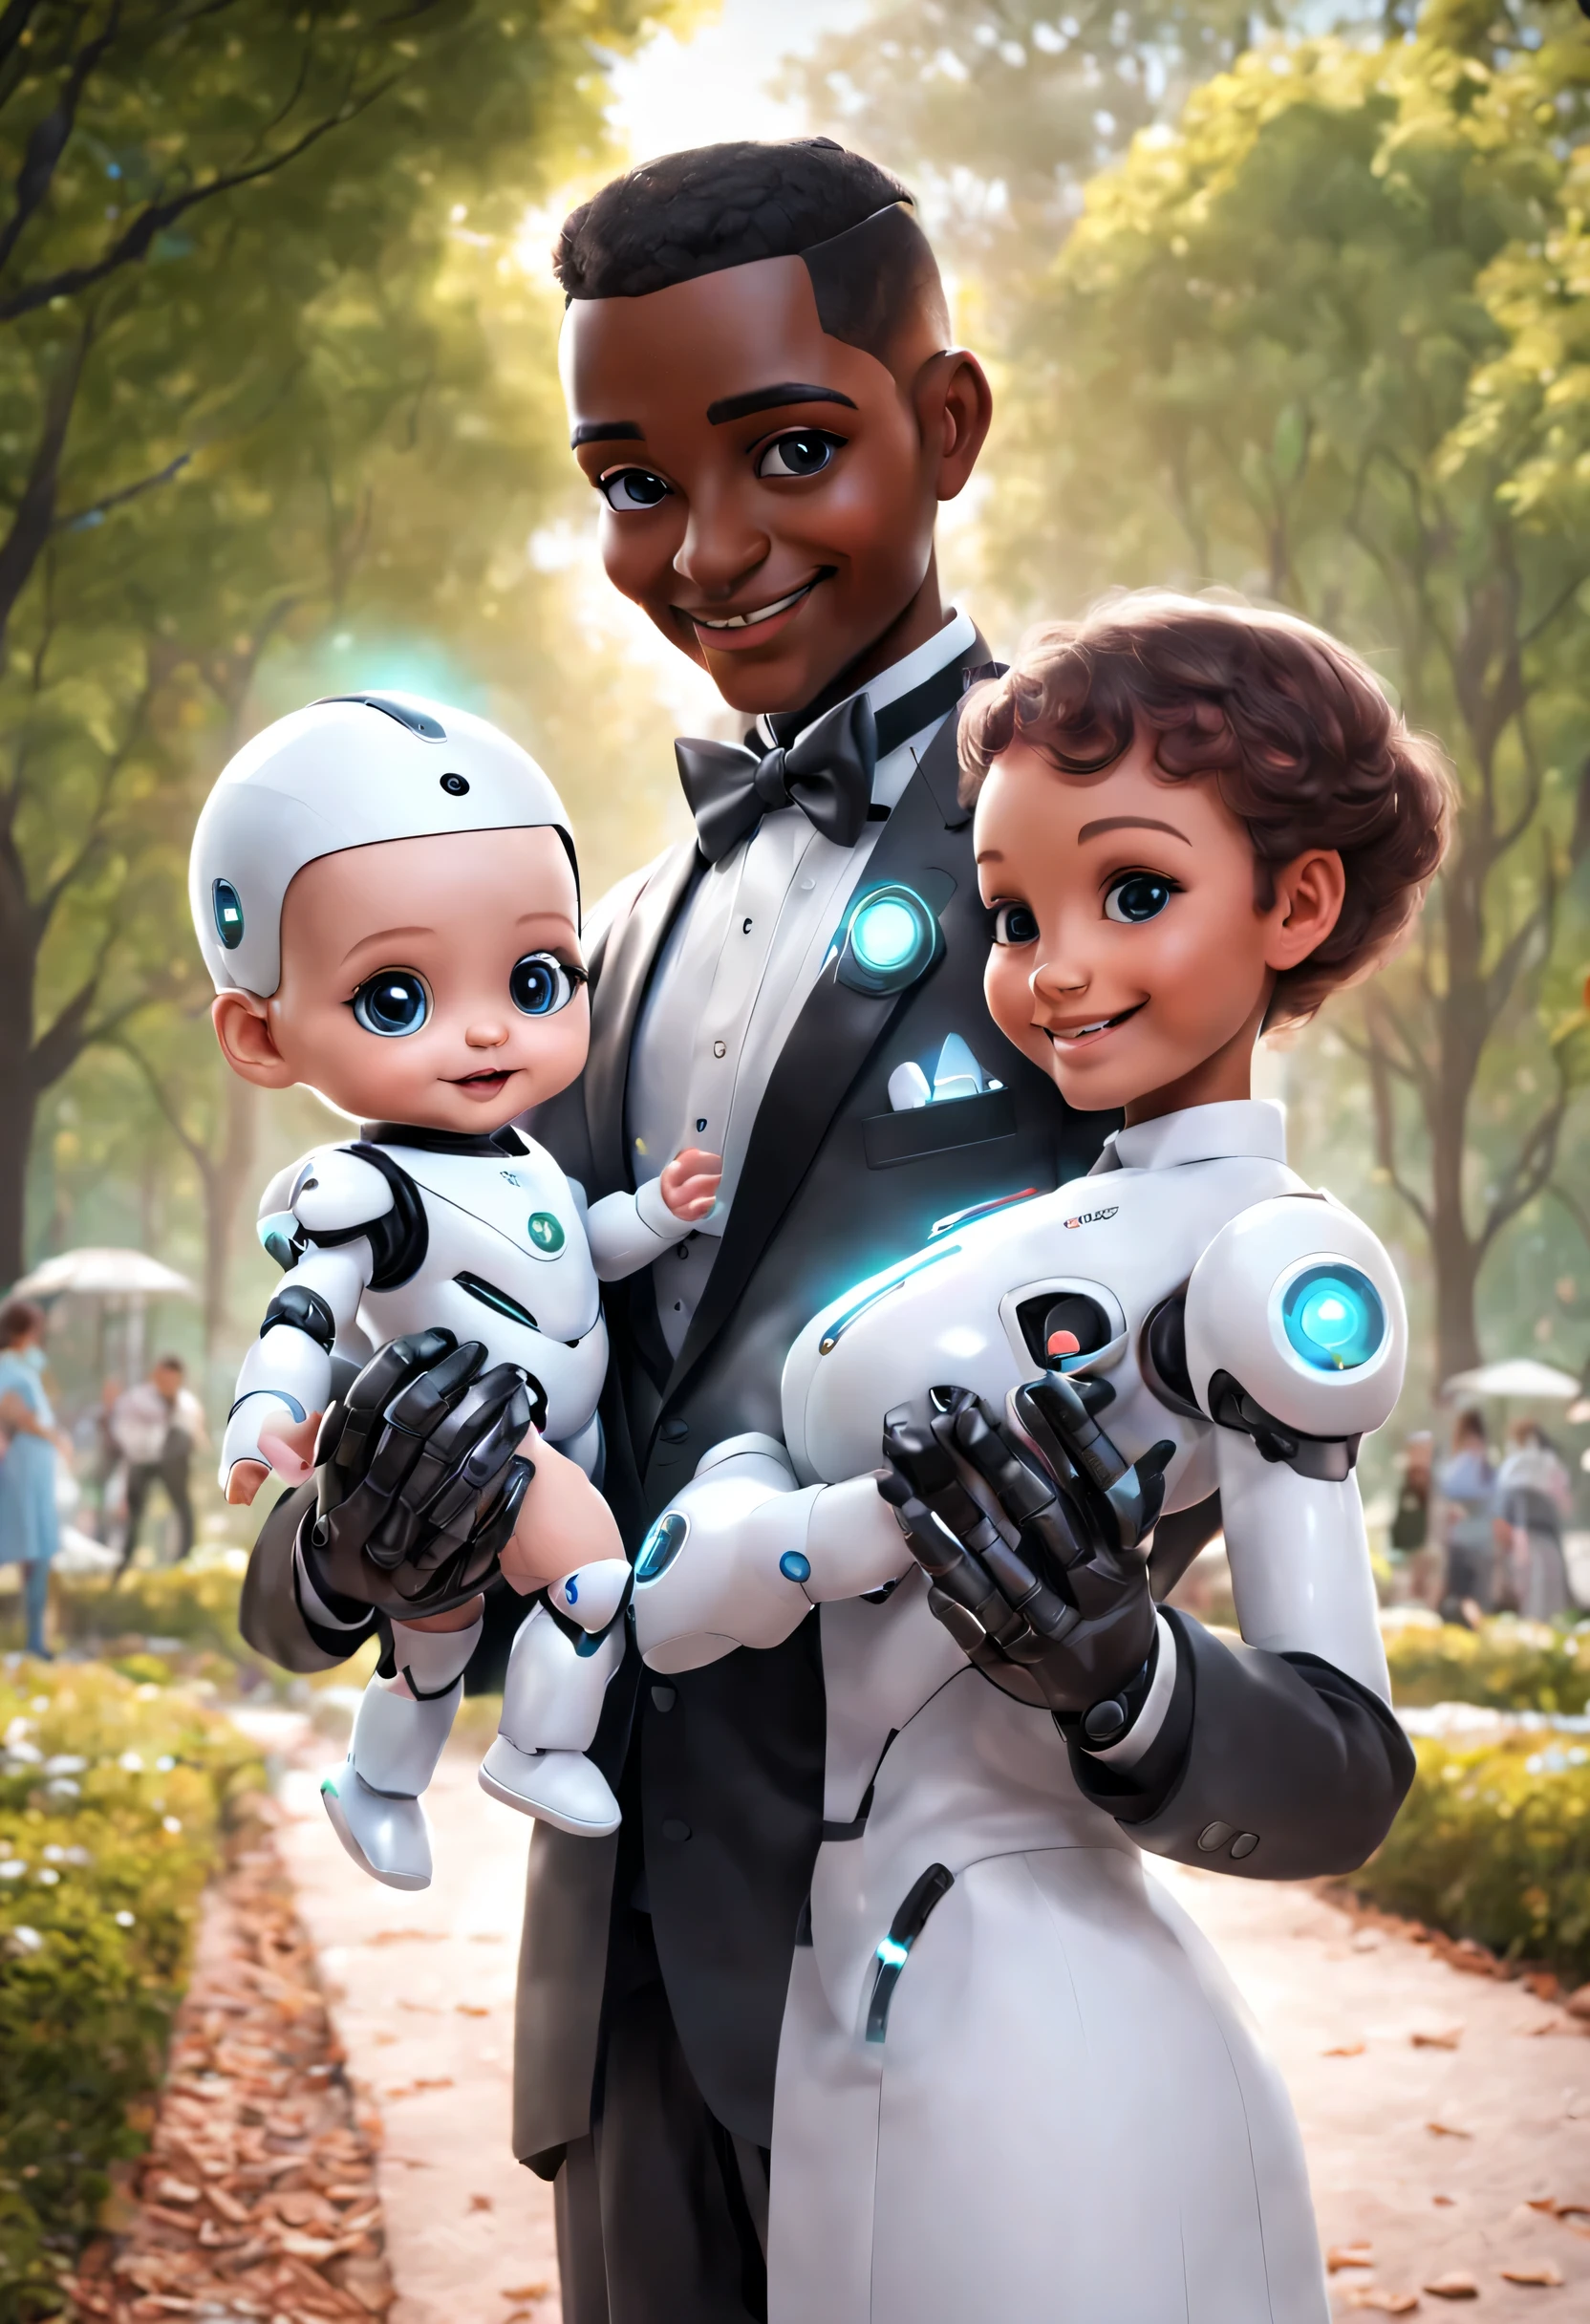 (Un robot majordome tient un adorable bébé humain dans le parc), Un robot majordome s&#39;occupe de bébé tout au long du processus. La tête est équipée d&#39;un affichage facial analogique haute définition, Sourire chaleureux et amical, heureux, Porter un uniforme de majordome blanc holographique, Conception des futurs personnages, fiction scientifique, Technologie noire, 3D, style cyberpunk
,